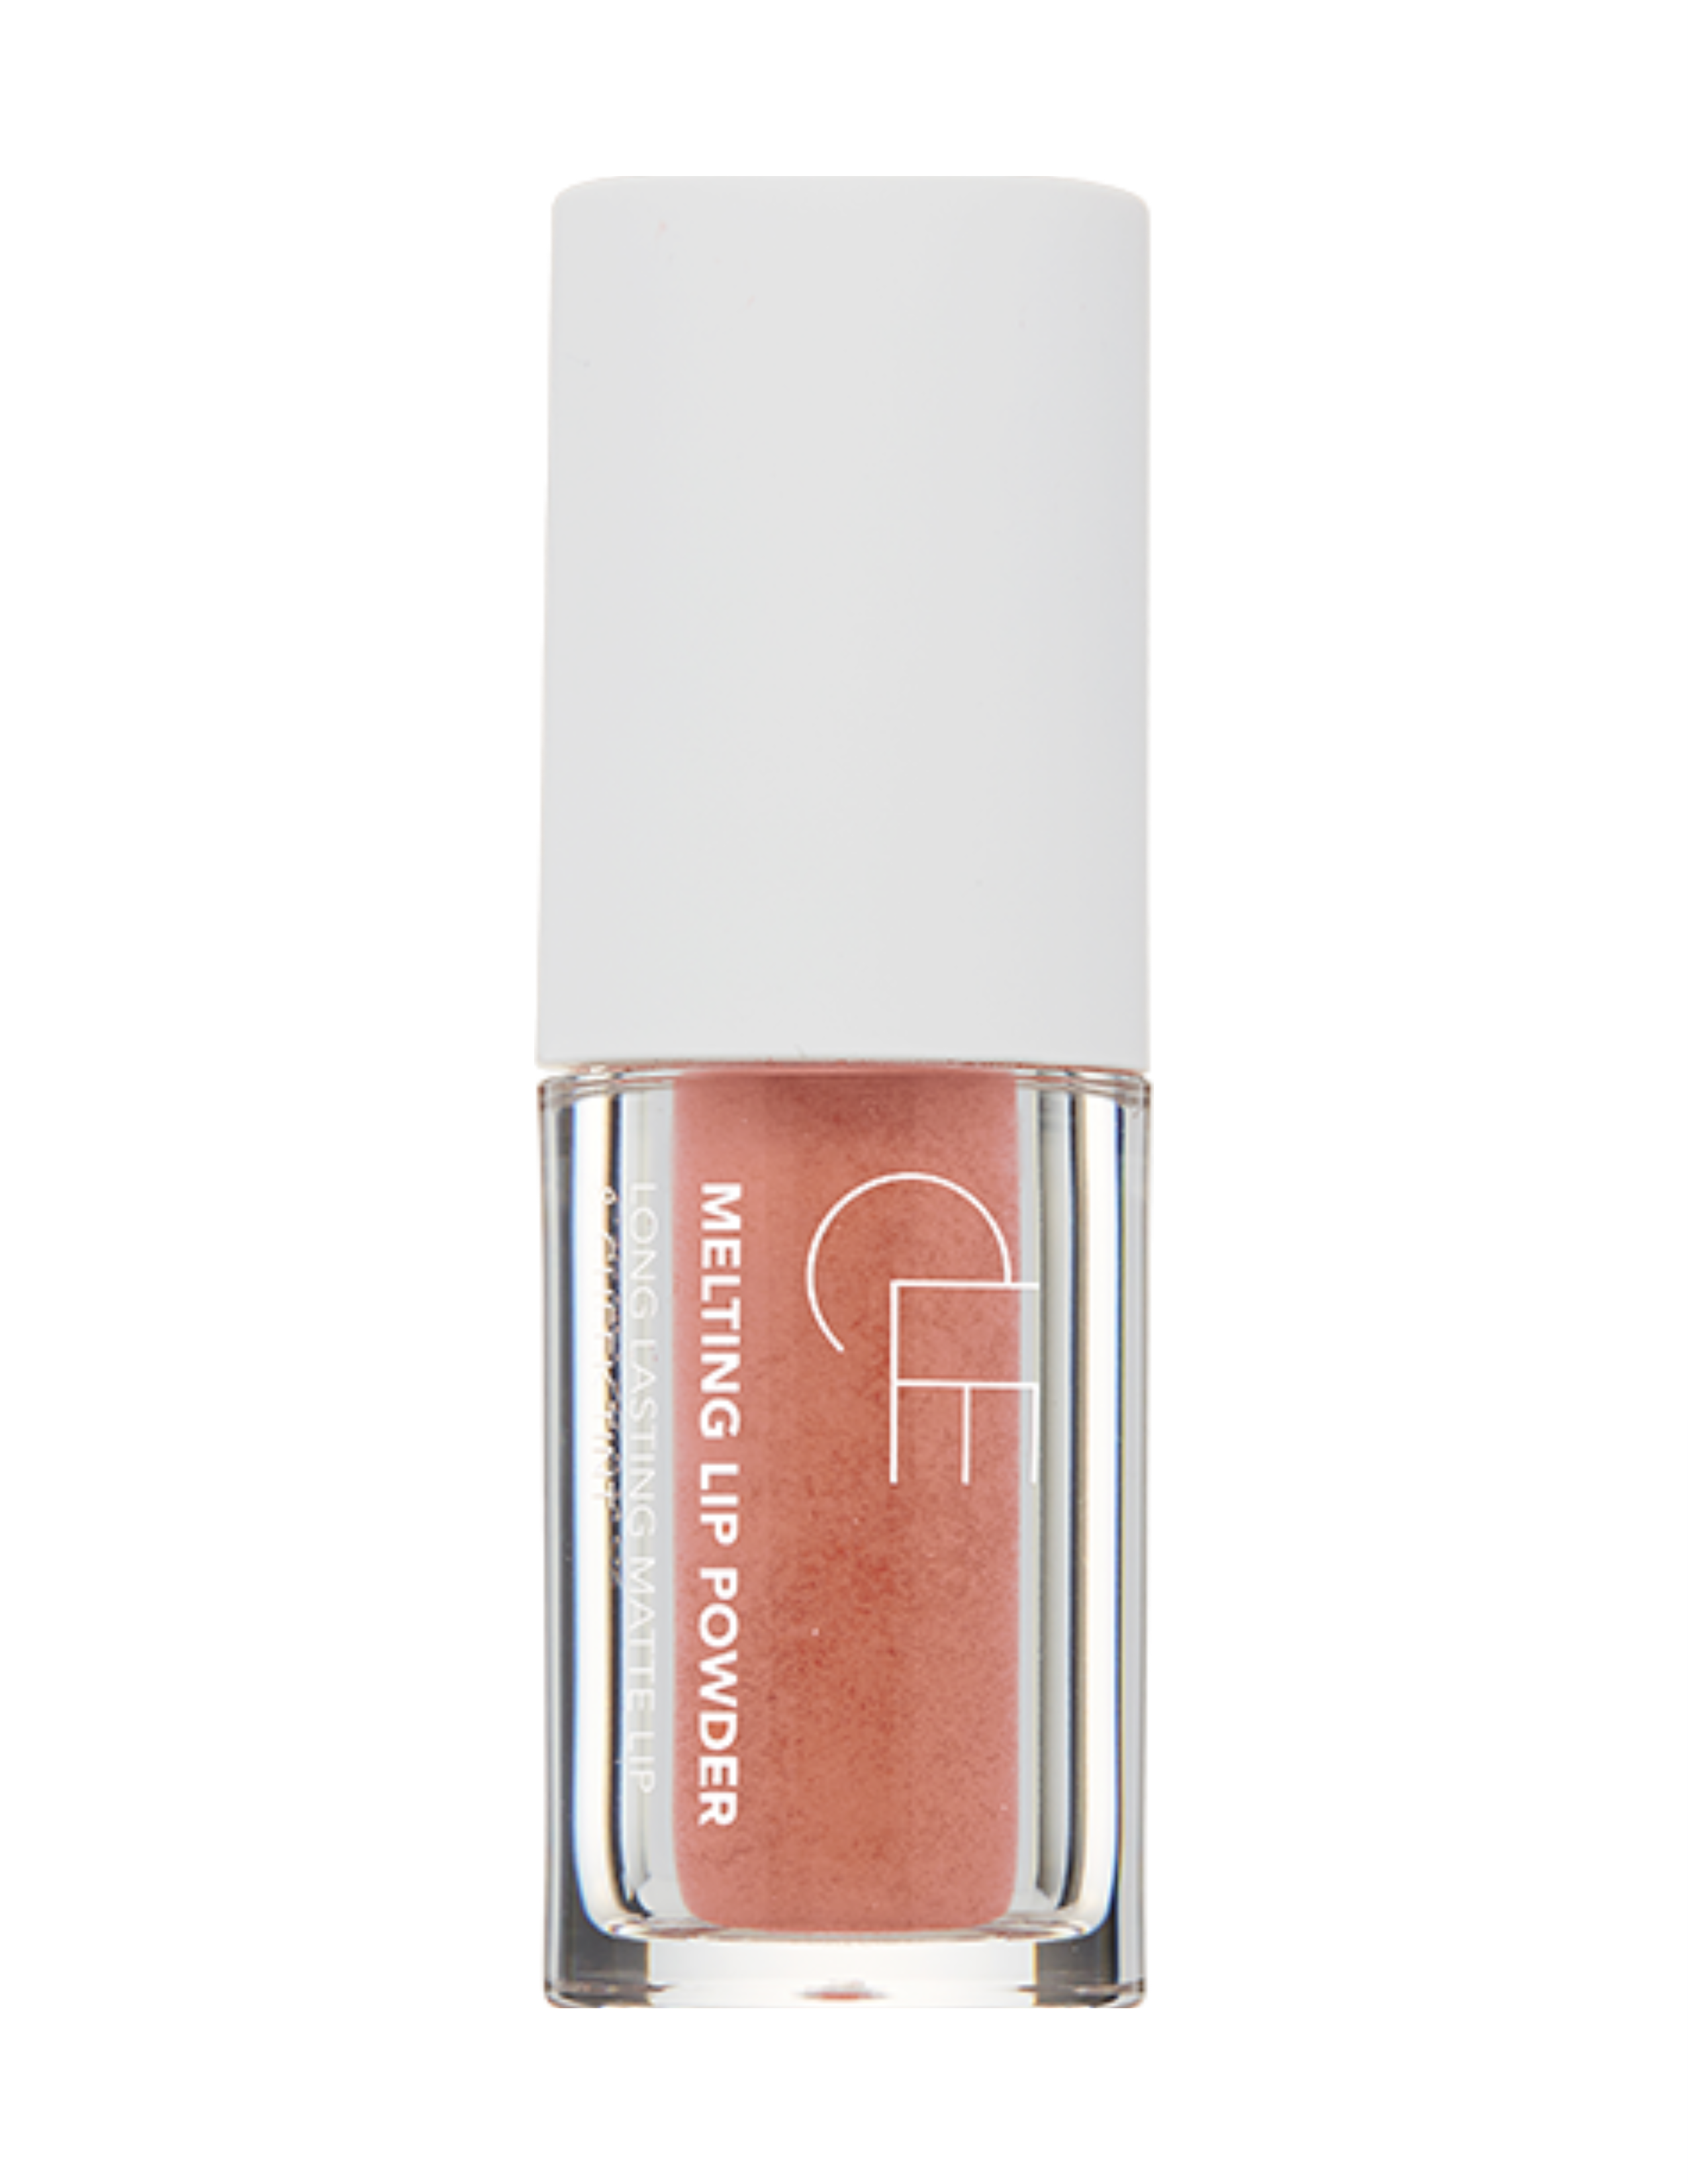 Melting Lip Powder - Nude Blush | Tinta Multiusos Labial & Rubor